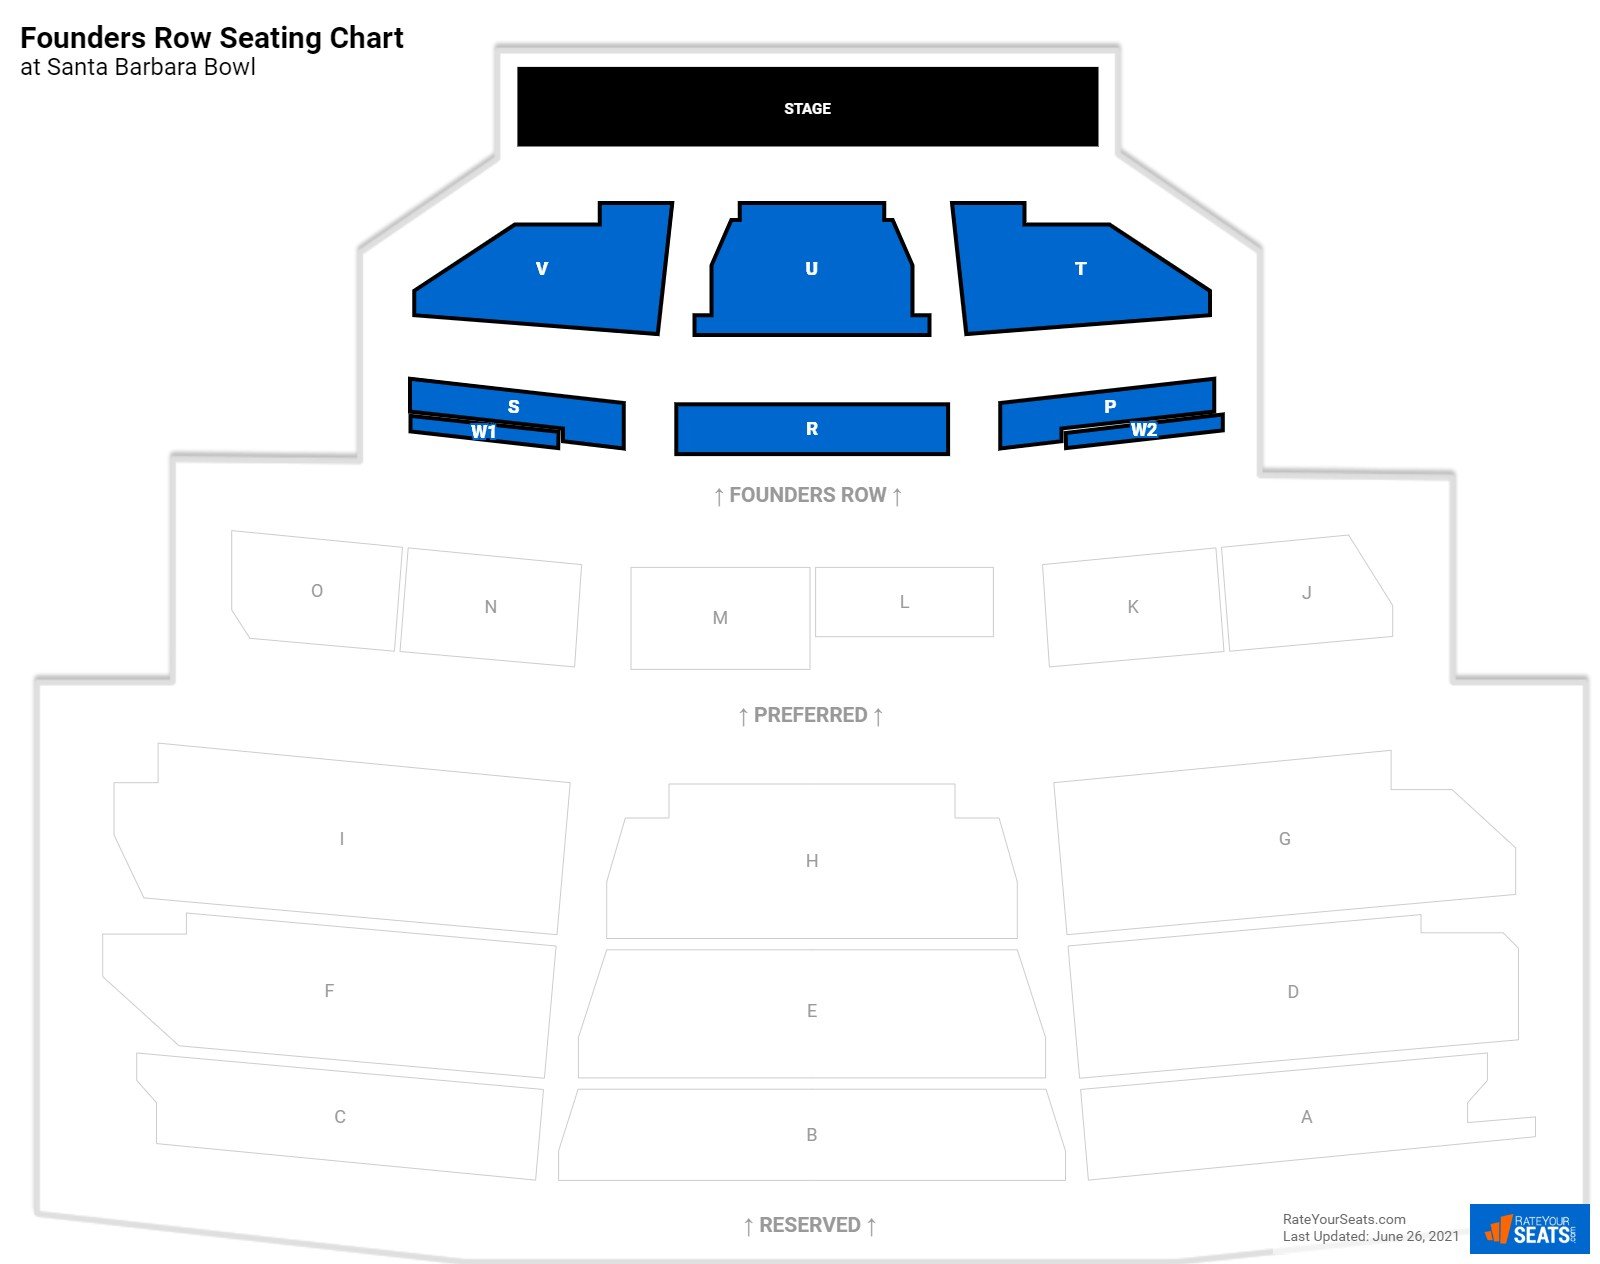 Concert Founders Row Seating Chart at Santa Barbara Bowl